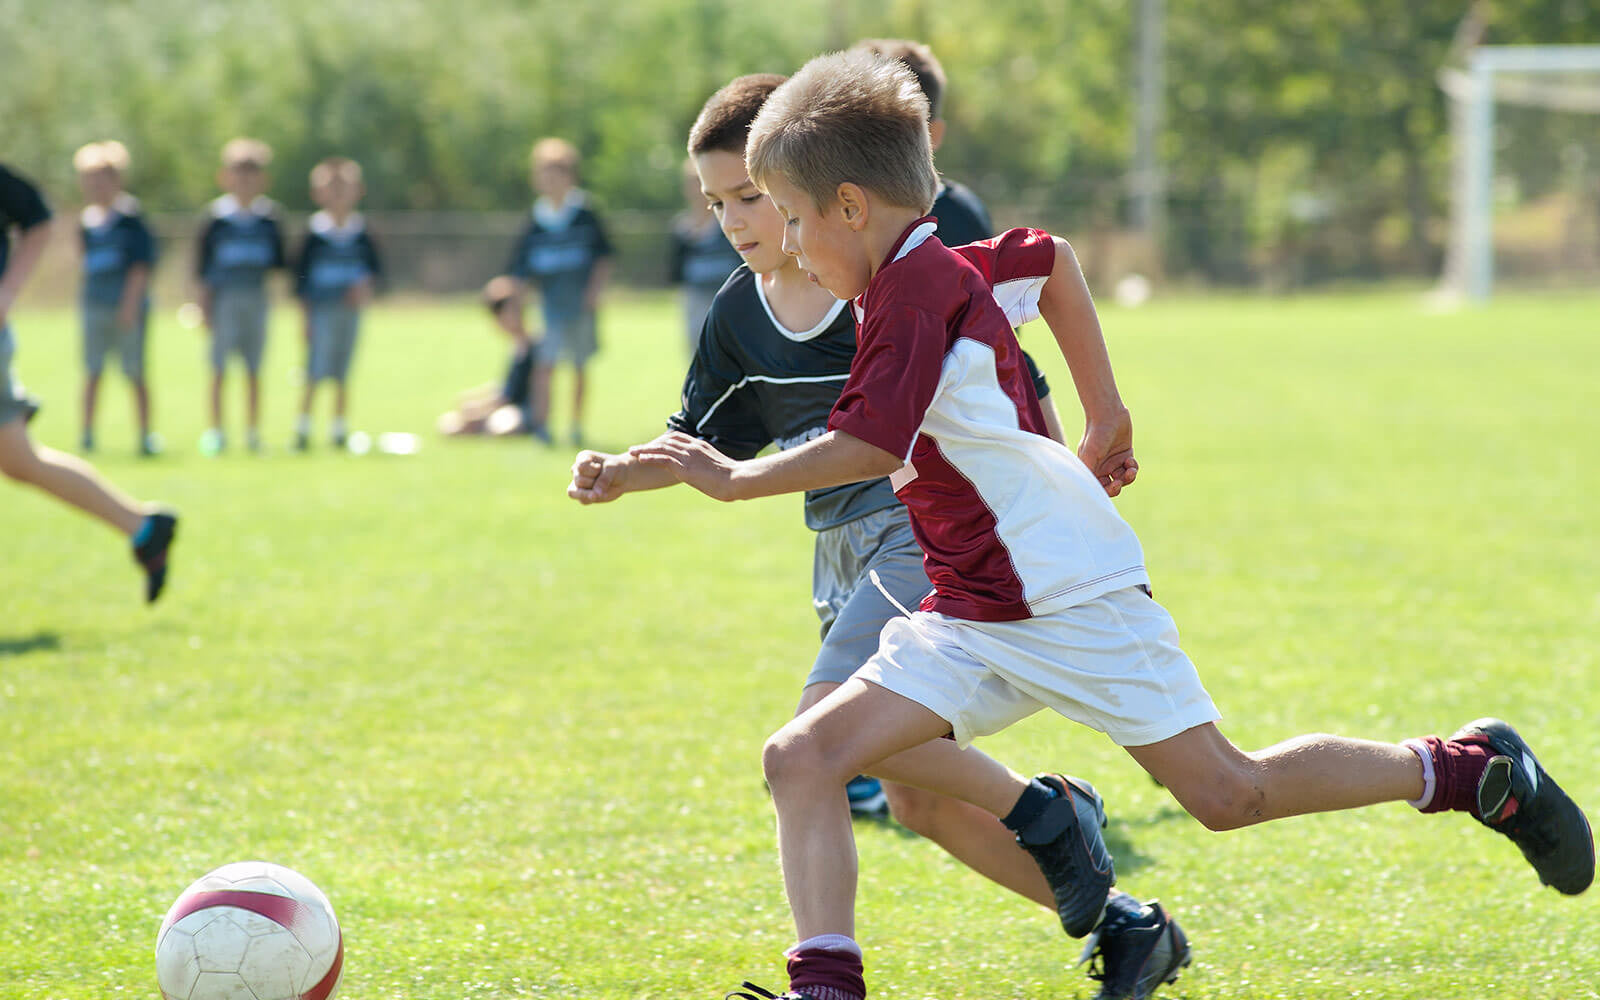 Тема фотографии игра в футбол. Детская тренировка по футболу. Футбол дети. Дети играют в футбол. Игра футбол.